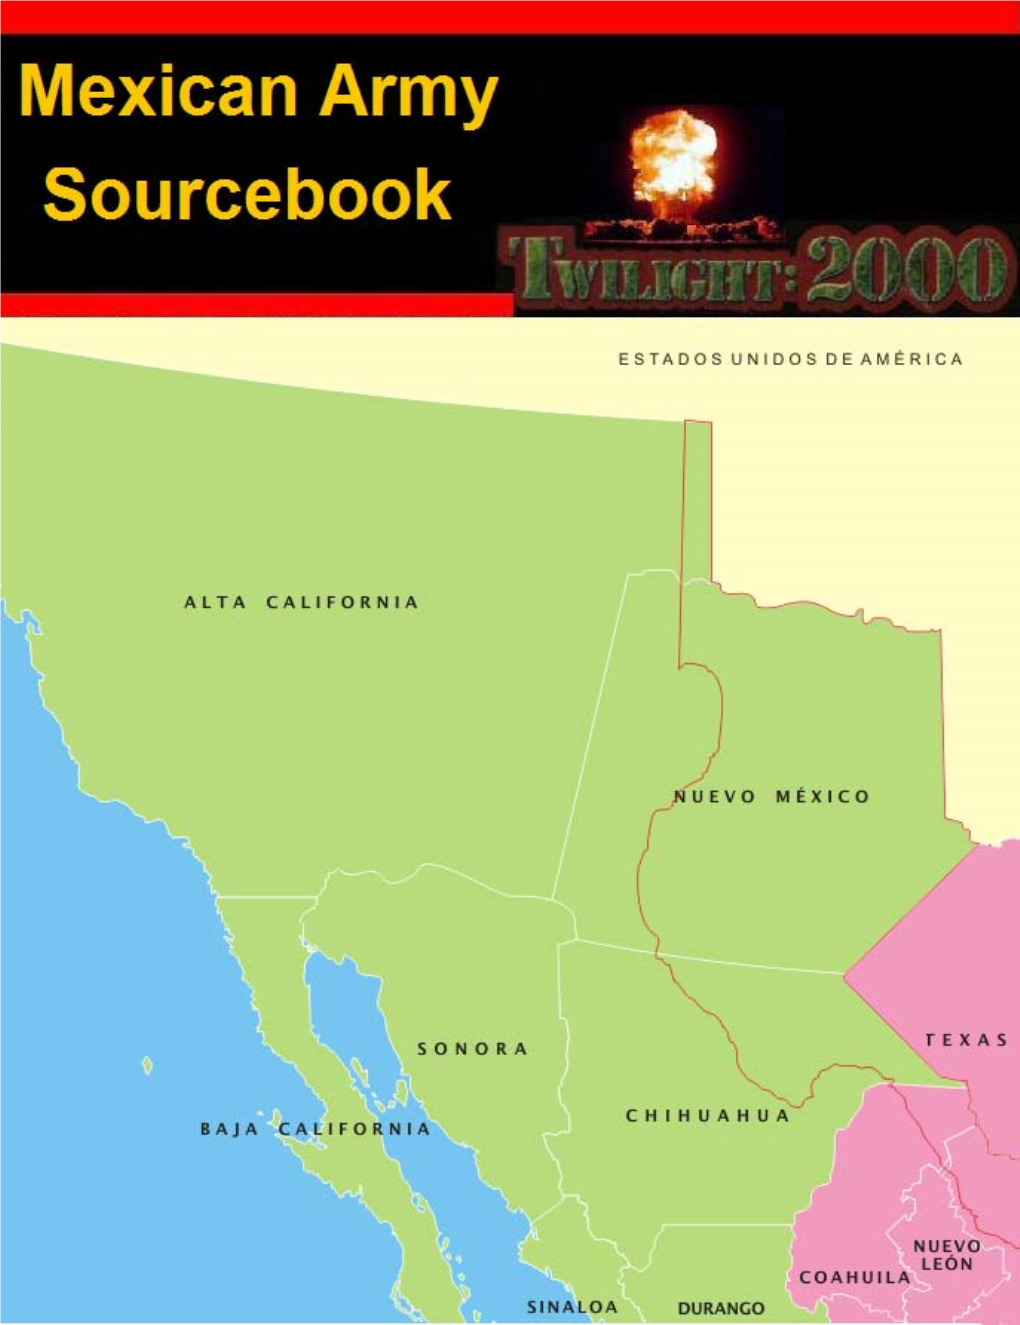 Twilight:2000 Ejército Méxicano Sourcebook Designs by Paul Mulcahy